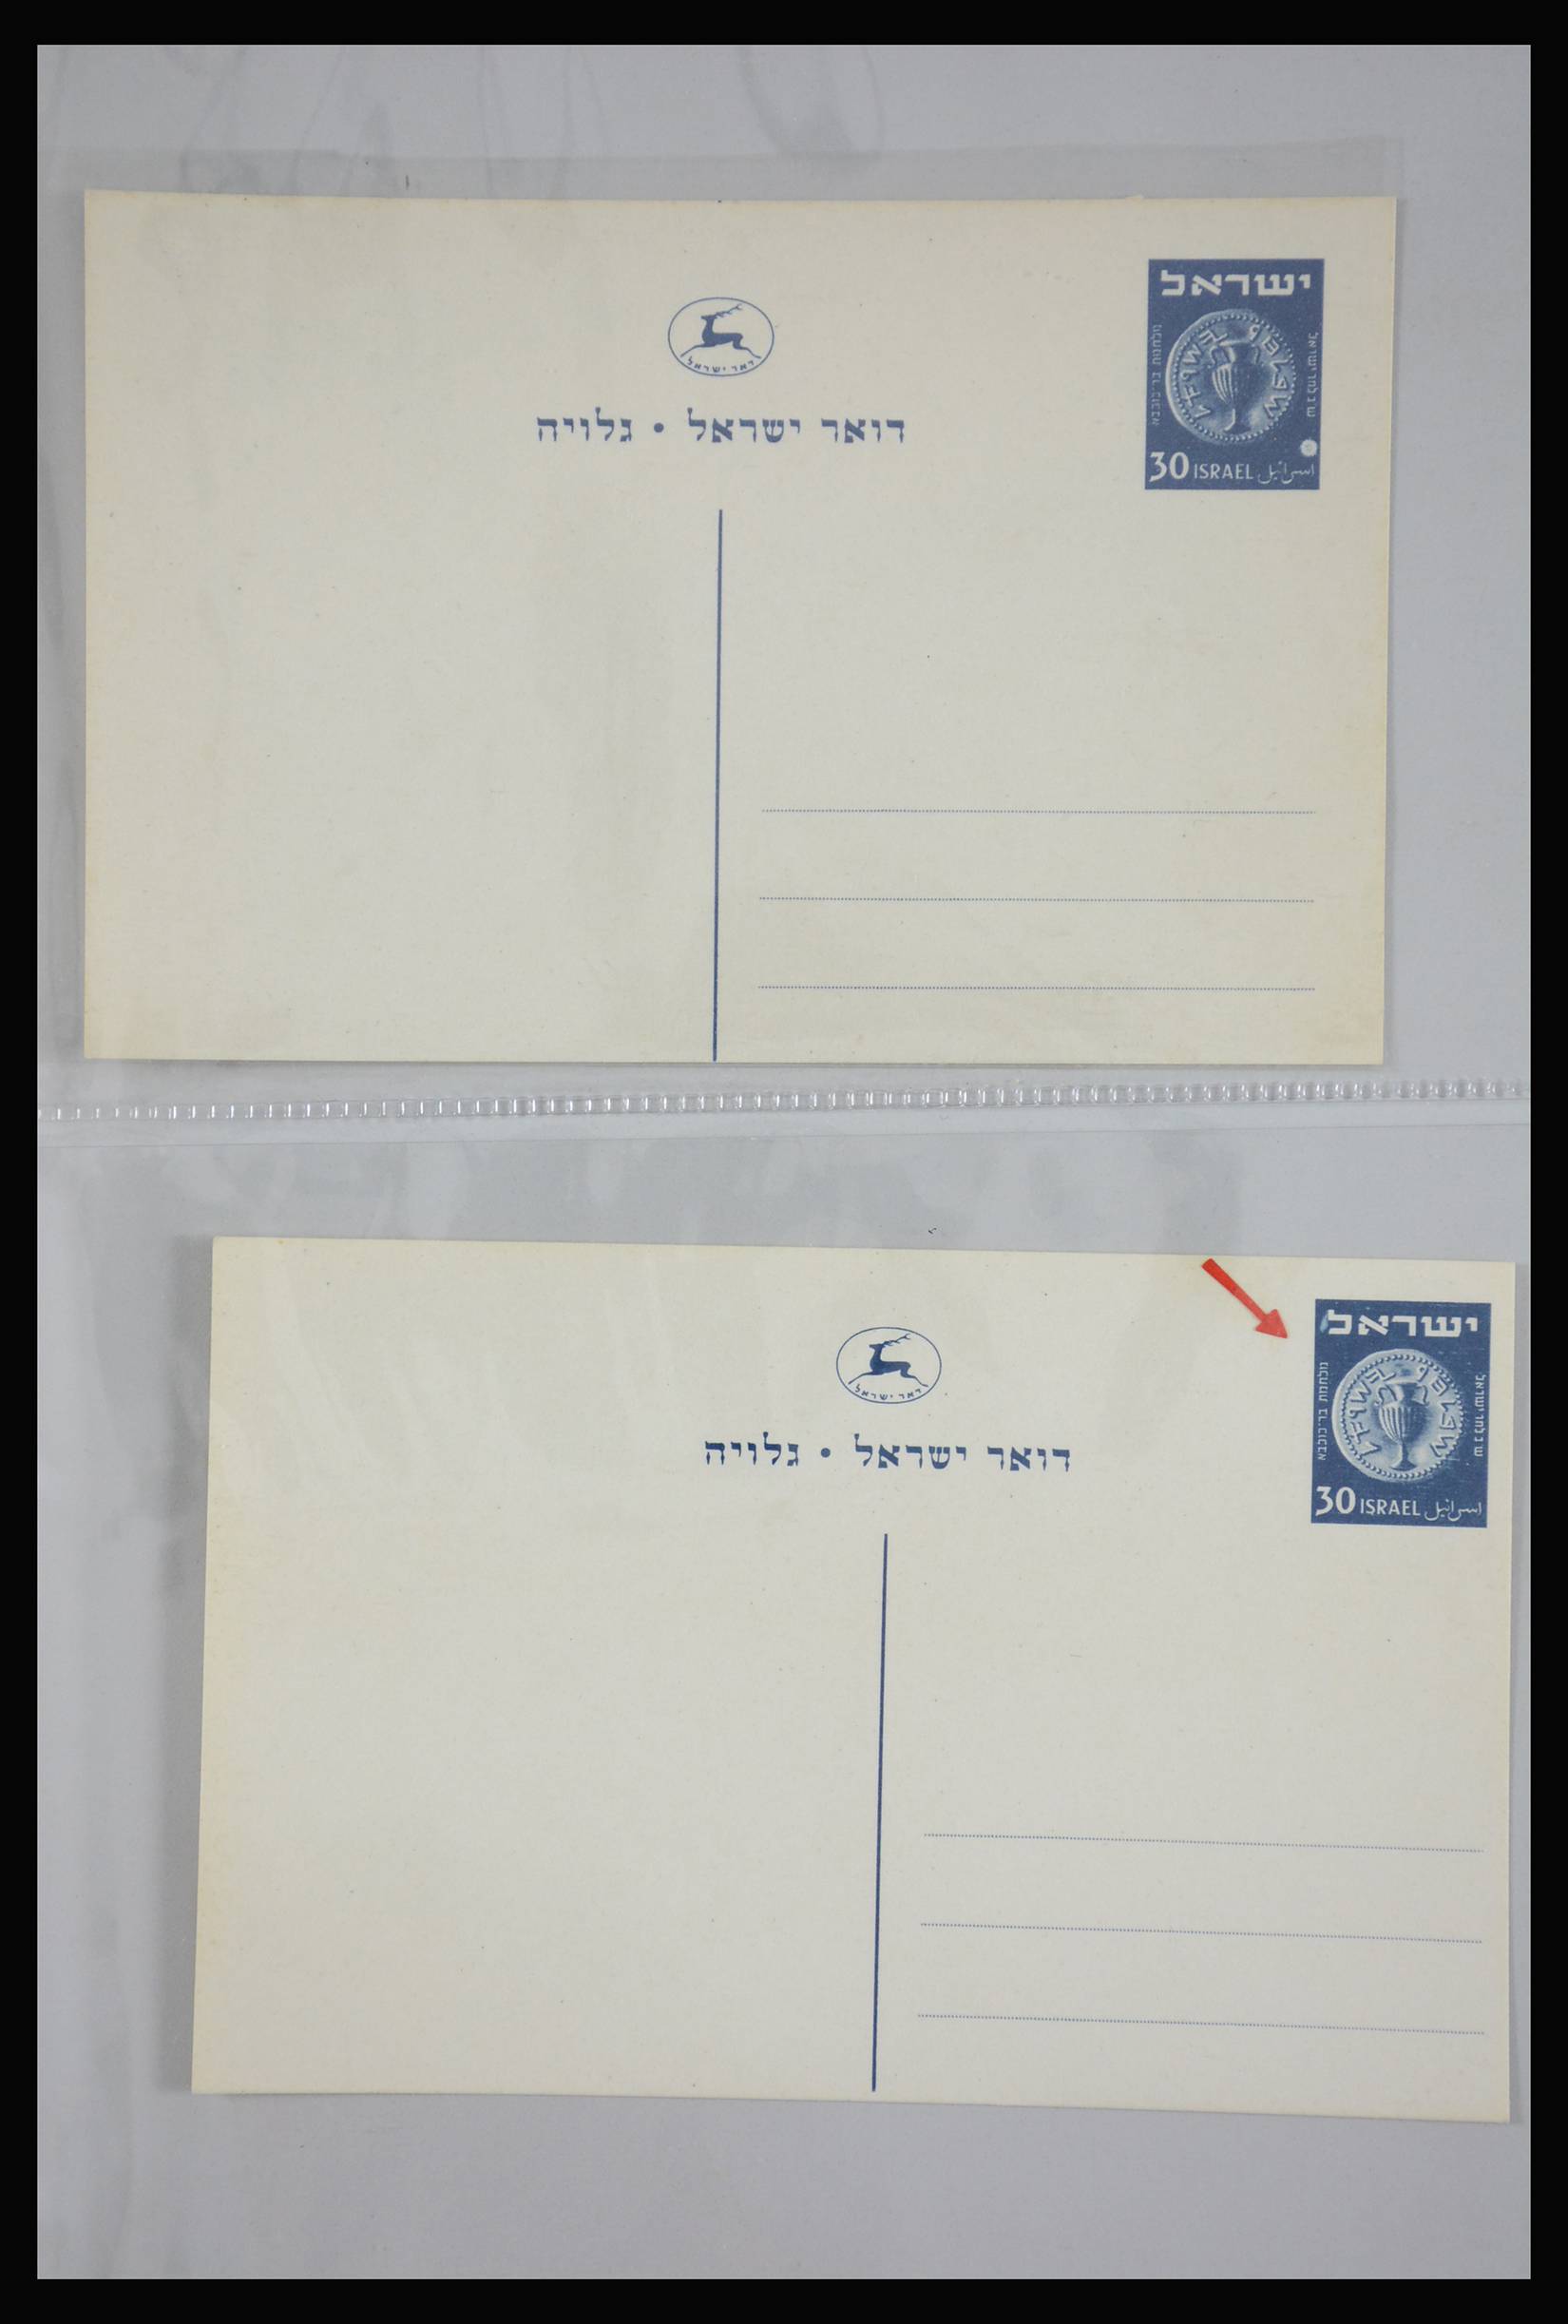 27822 006 - 27822 Israël brieven.